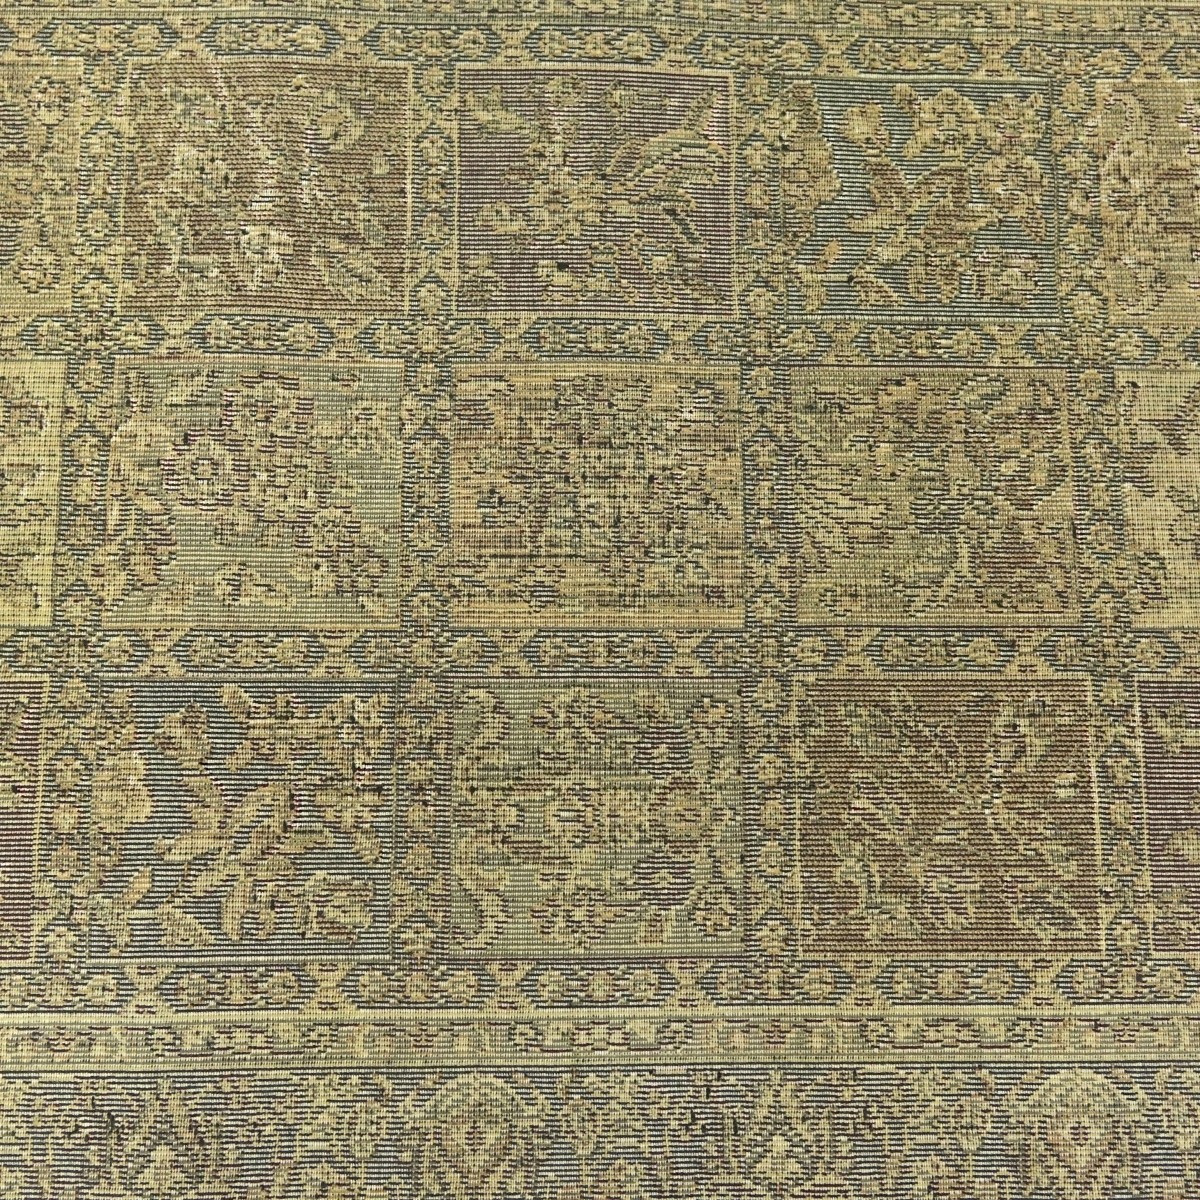 Small Persian Carpet